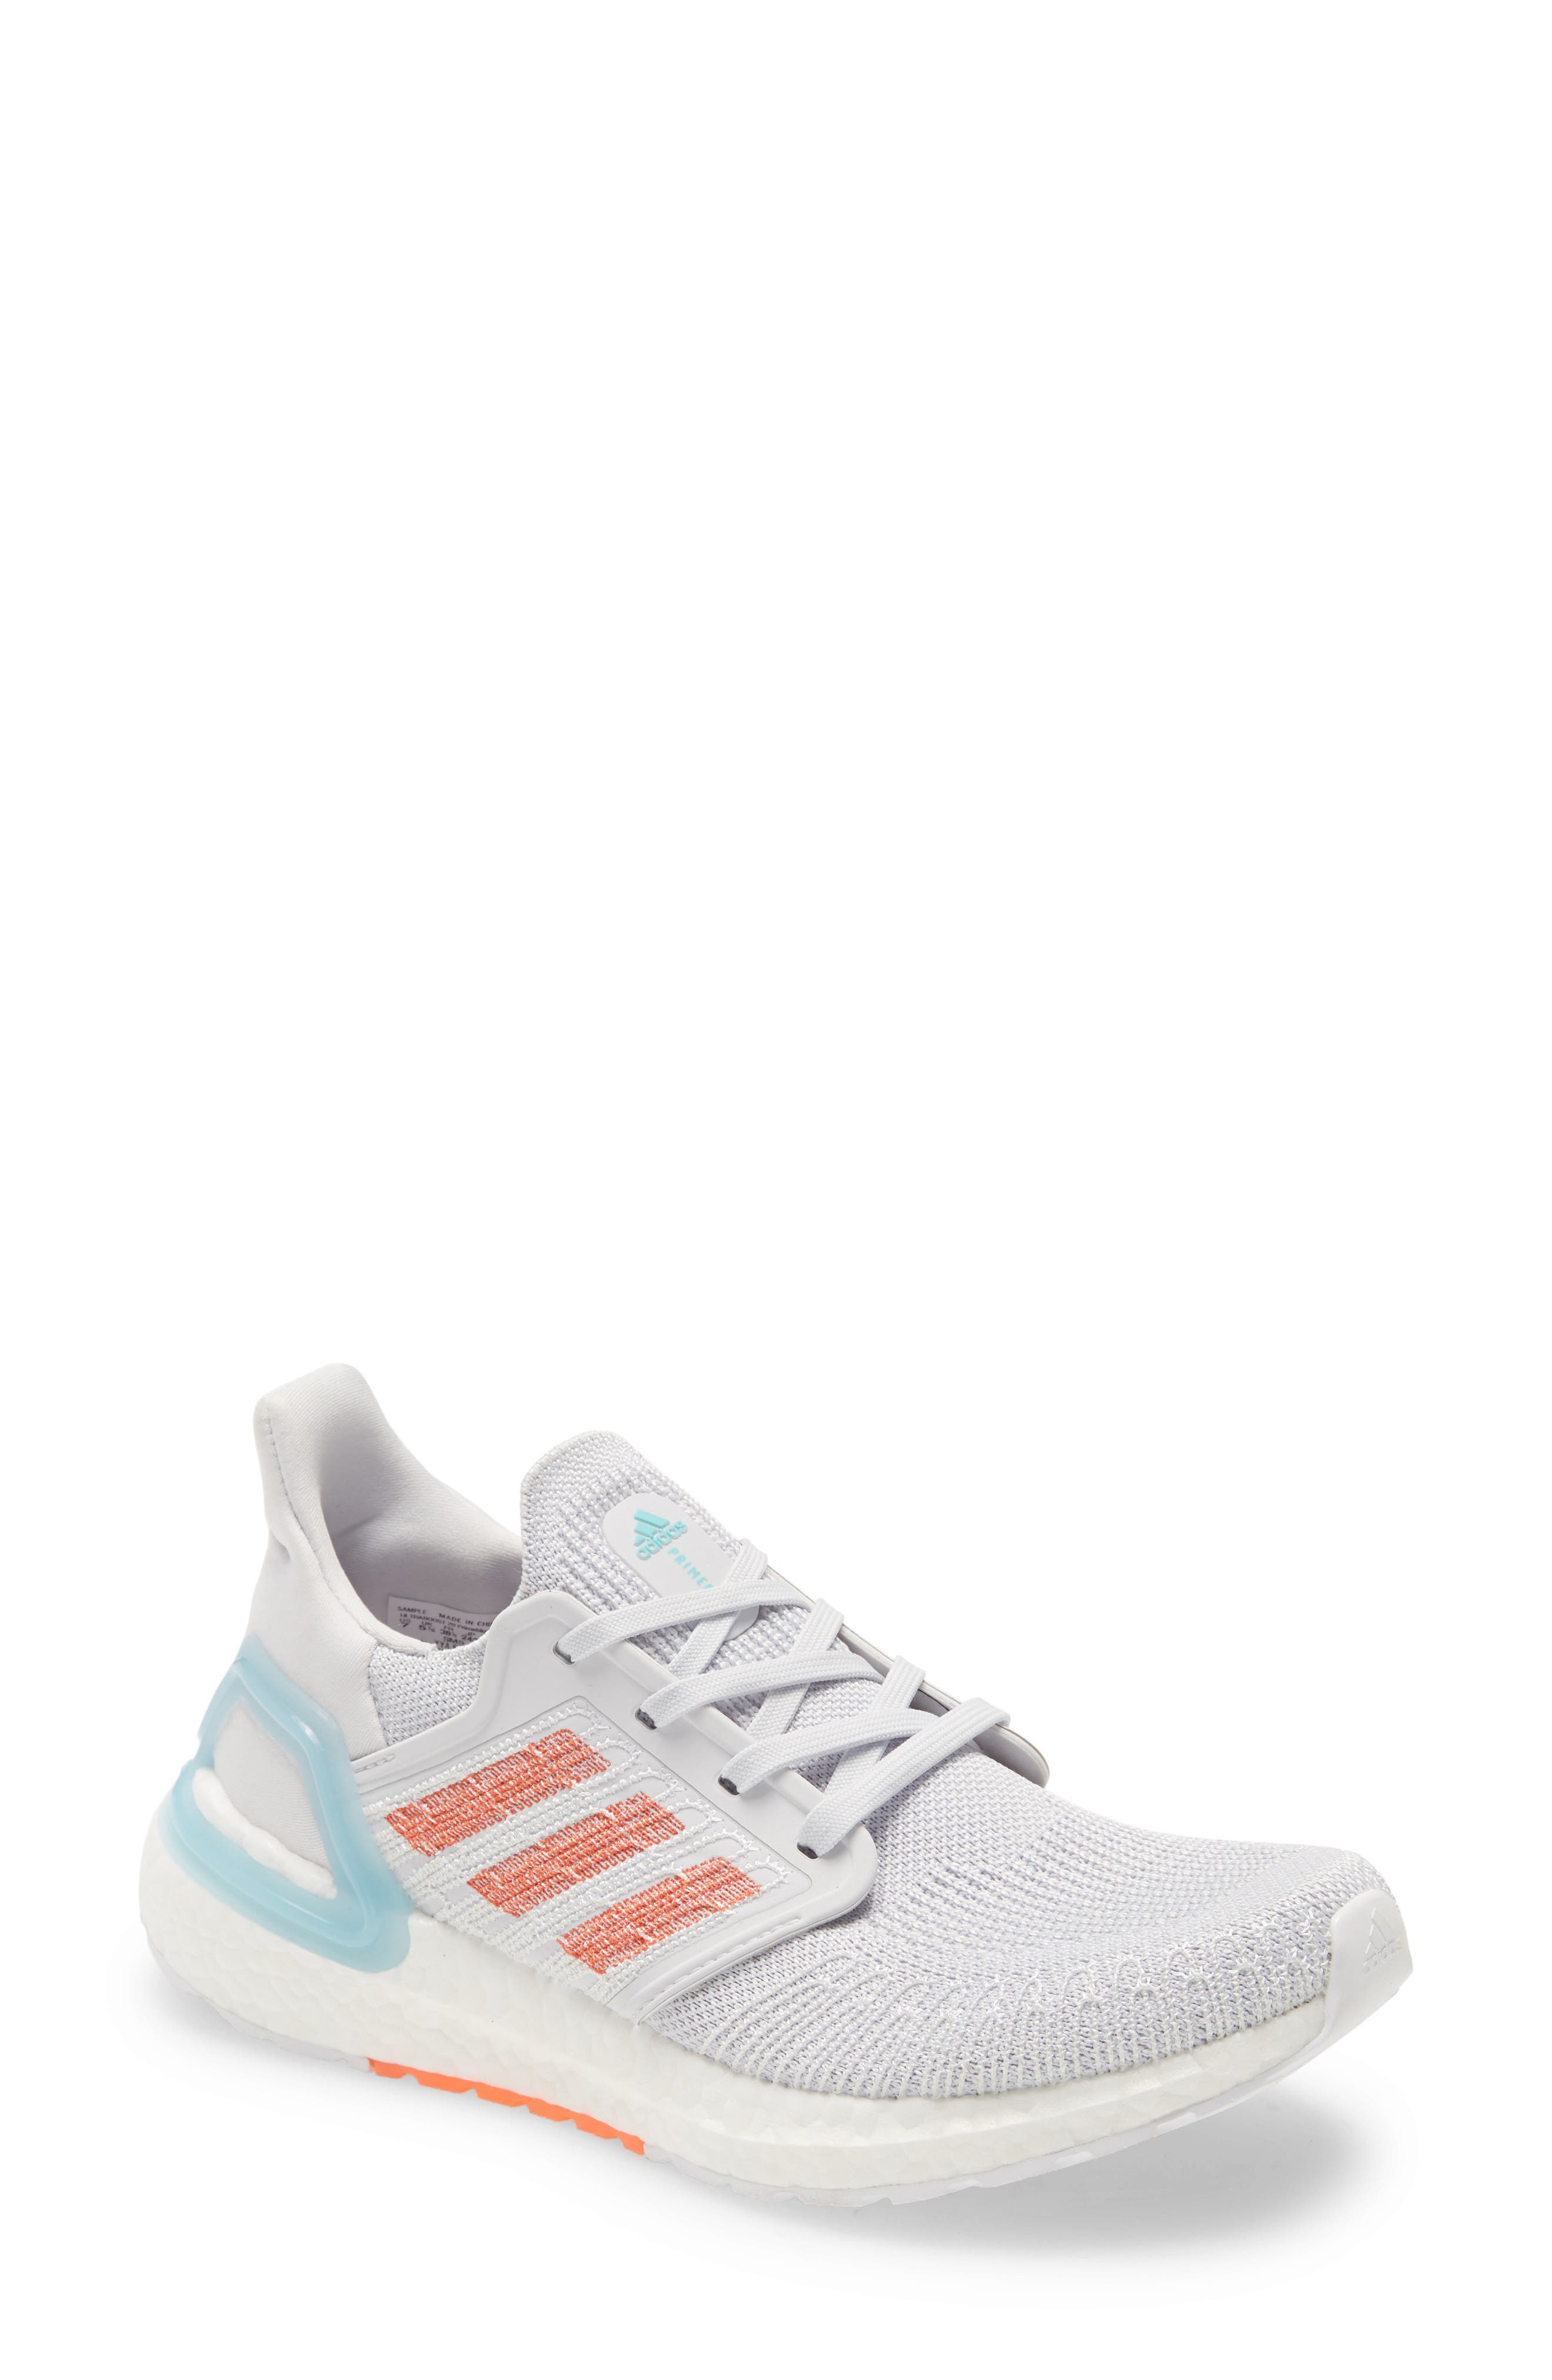 Adidas Originals Ultraboost 20 Running Shoe In Dash Grey/ True Orange/ Blue